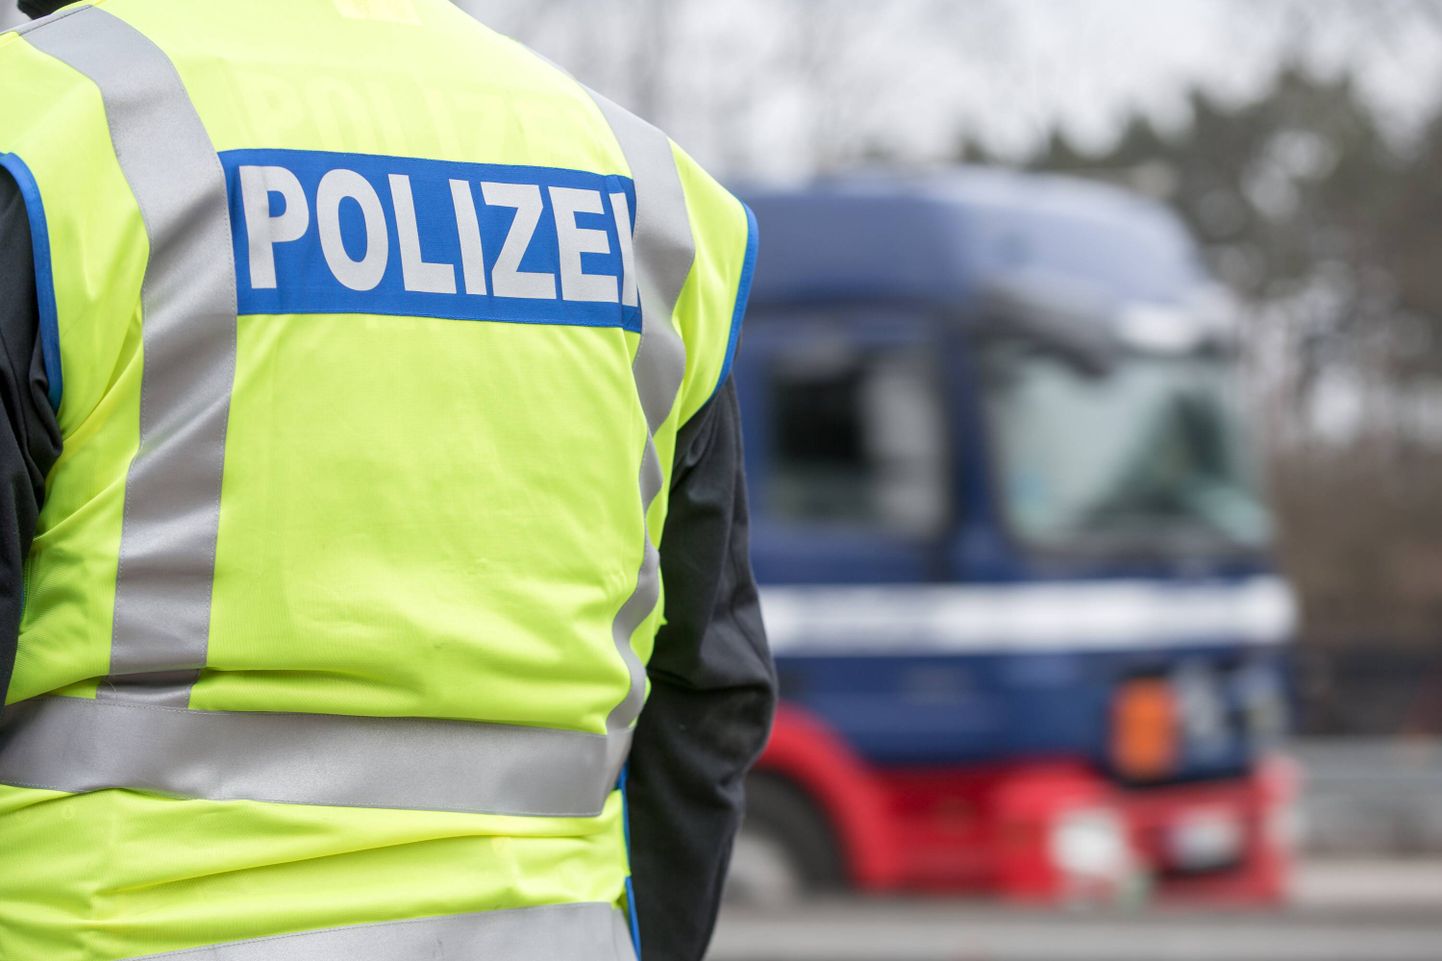 Saksa politsei vahistas 27-aastase naise, keda kahtlustatakse kuulumises välisriigi terroriorganisatsiooni.